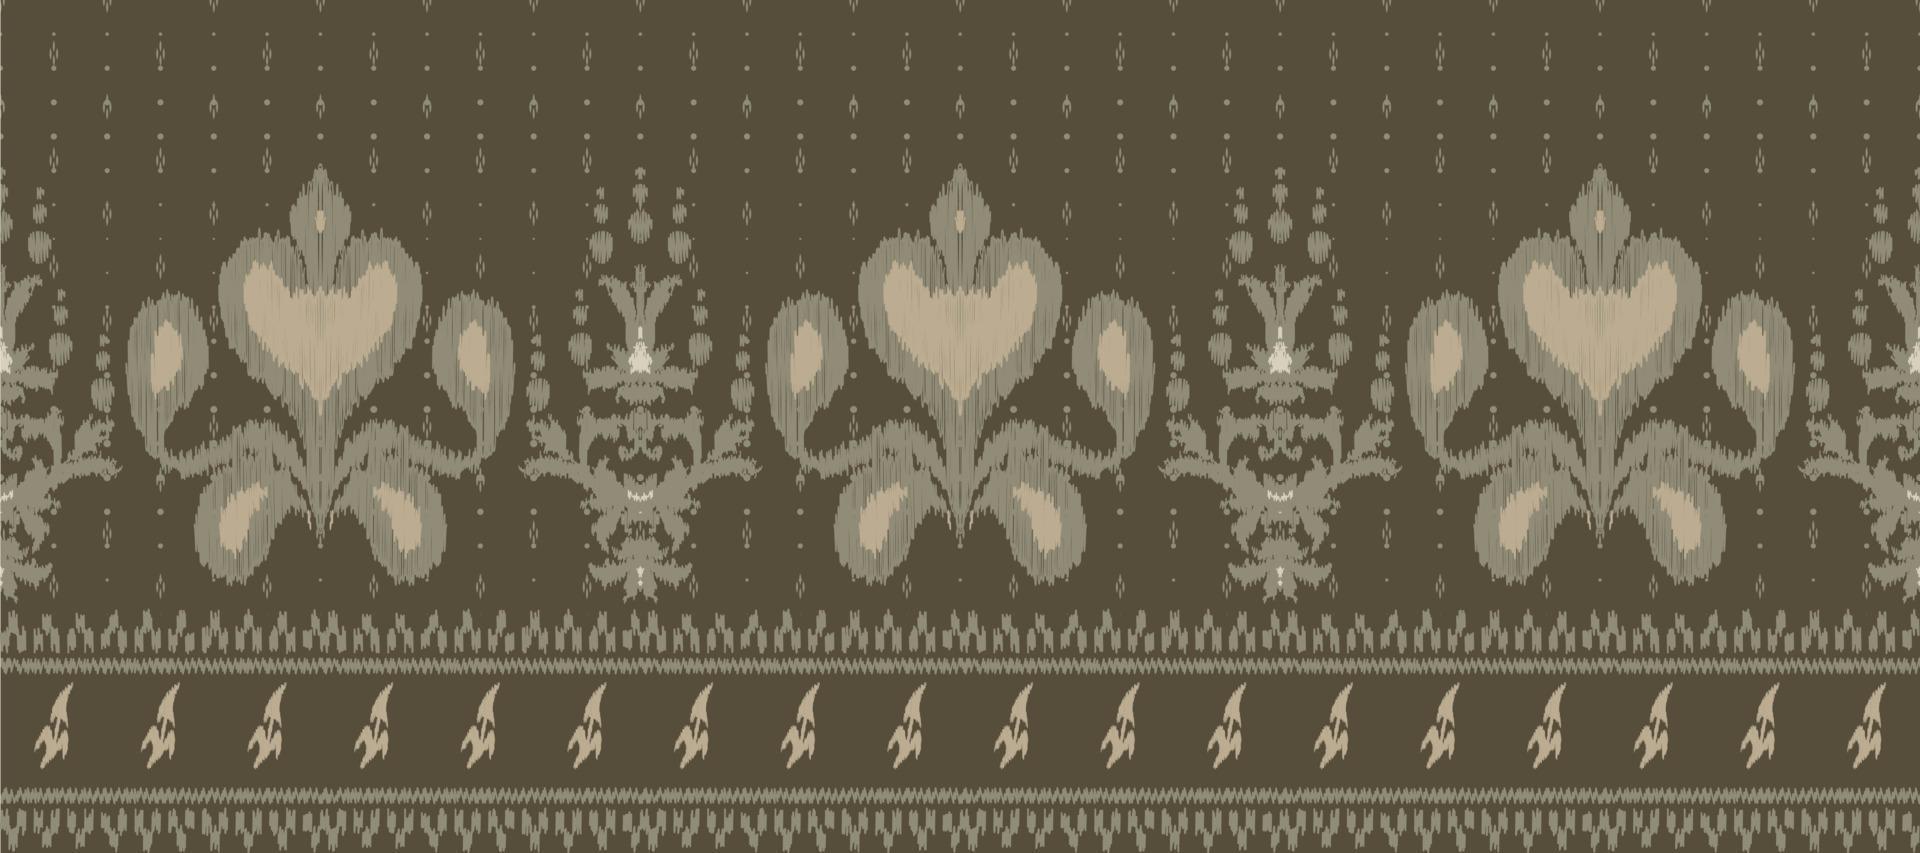 africano ikat damasco bordado antecedentes. geométrico étnico oriental modelo tradicional. ikat azteca estilo resumen vector ilustración. diseño para impresión textura,tela,sari,sari,alfombra.